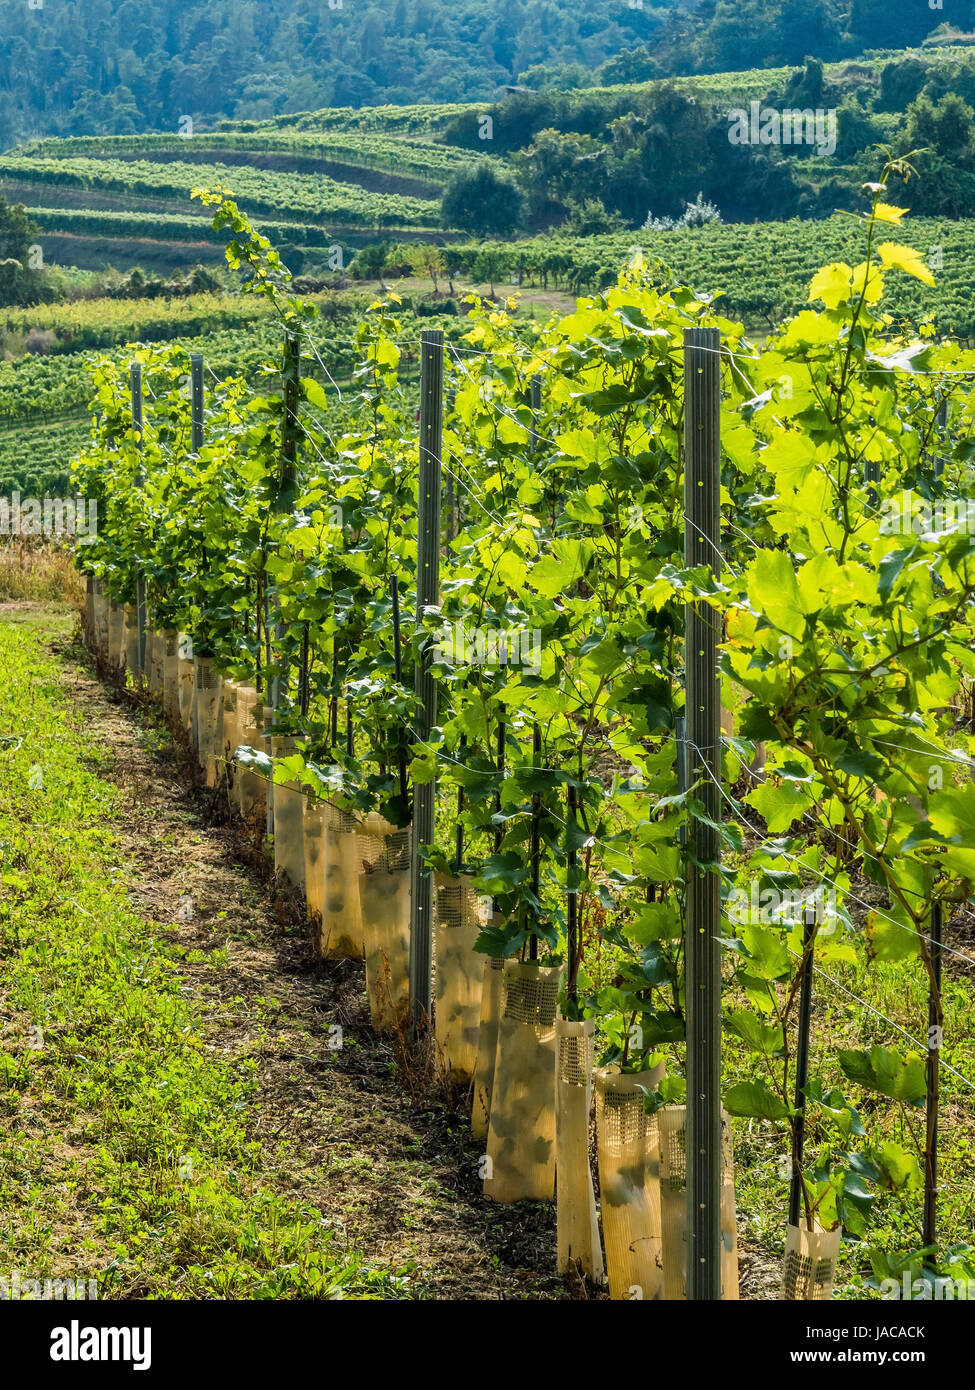 La viña de un viticultor en Baja Austria, Der Weingarten eines Winzers en Niederösterreich Foto de stock